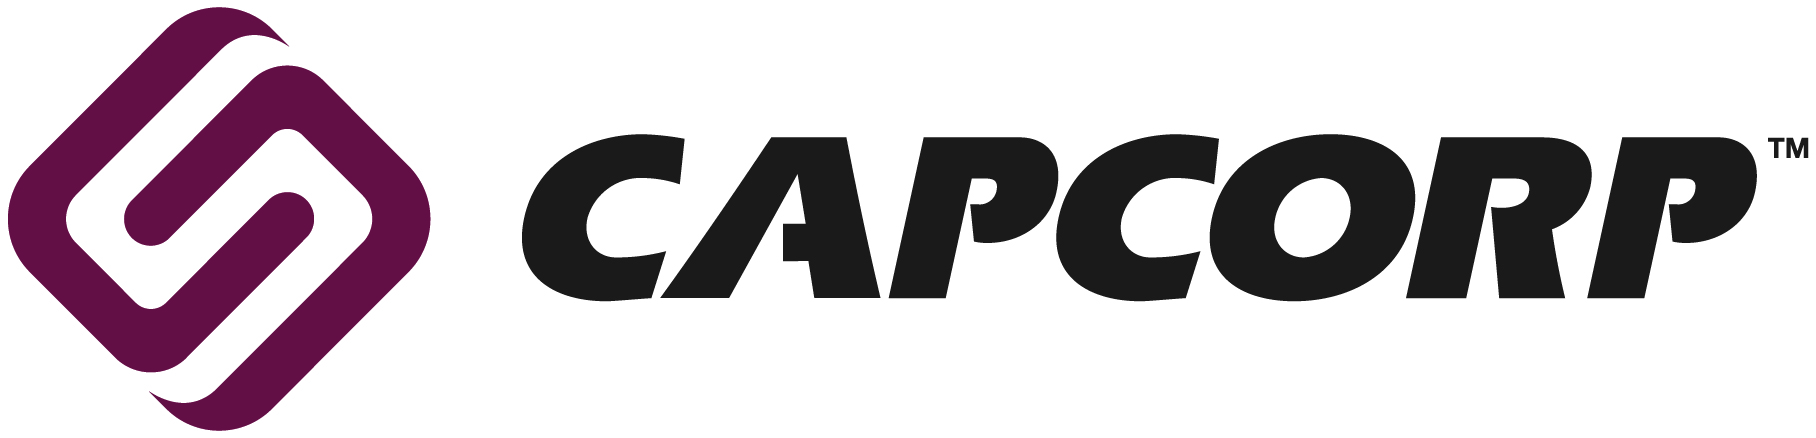 Capcorp Financial Logo